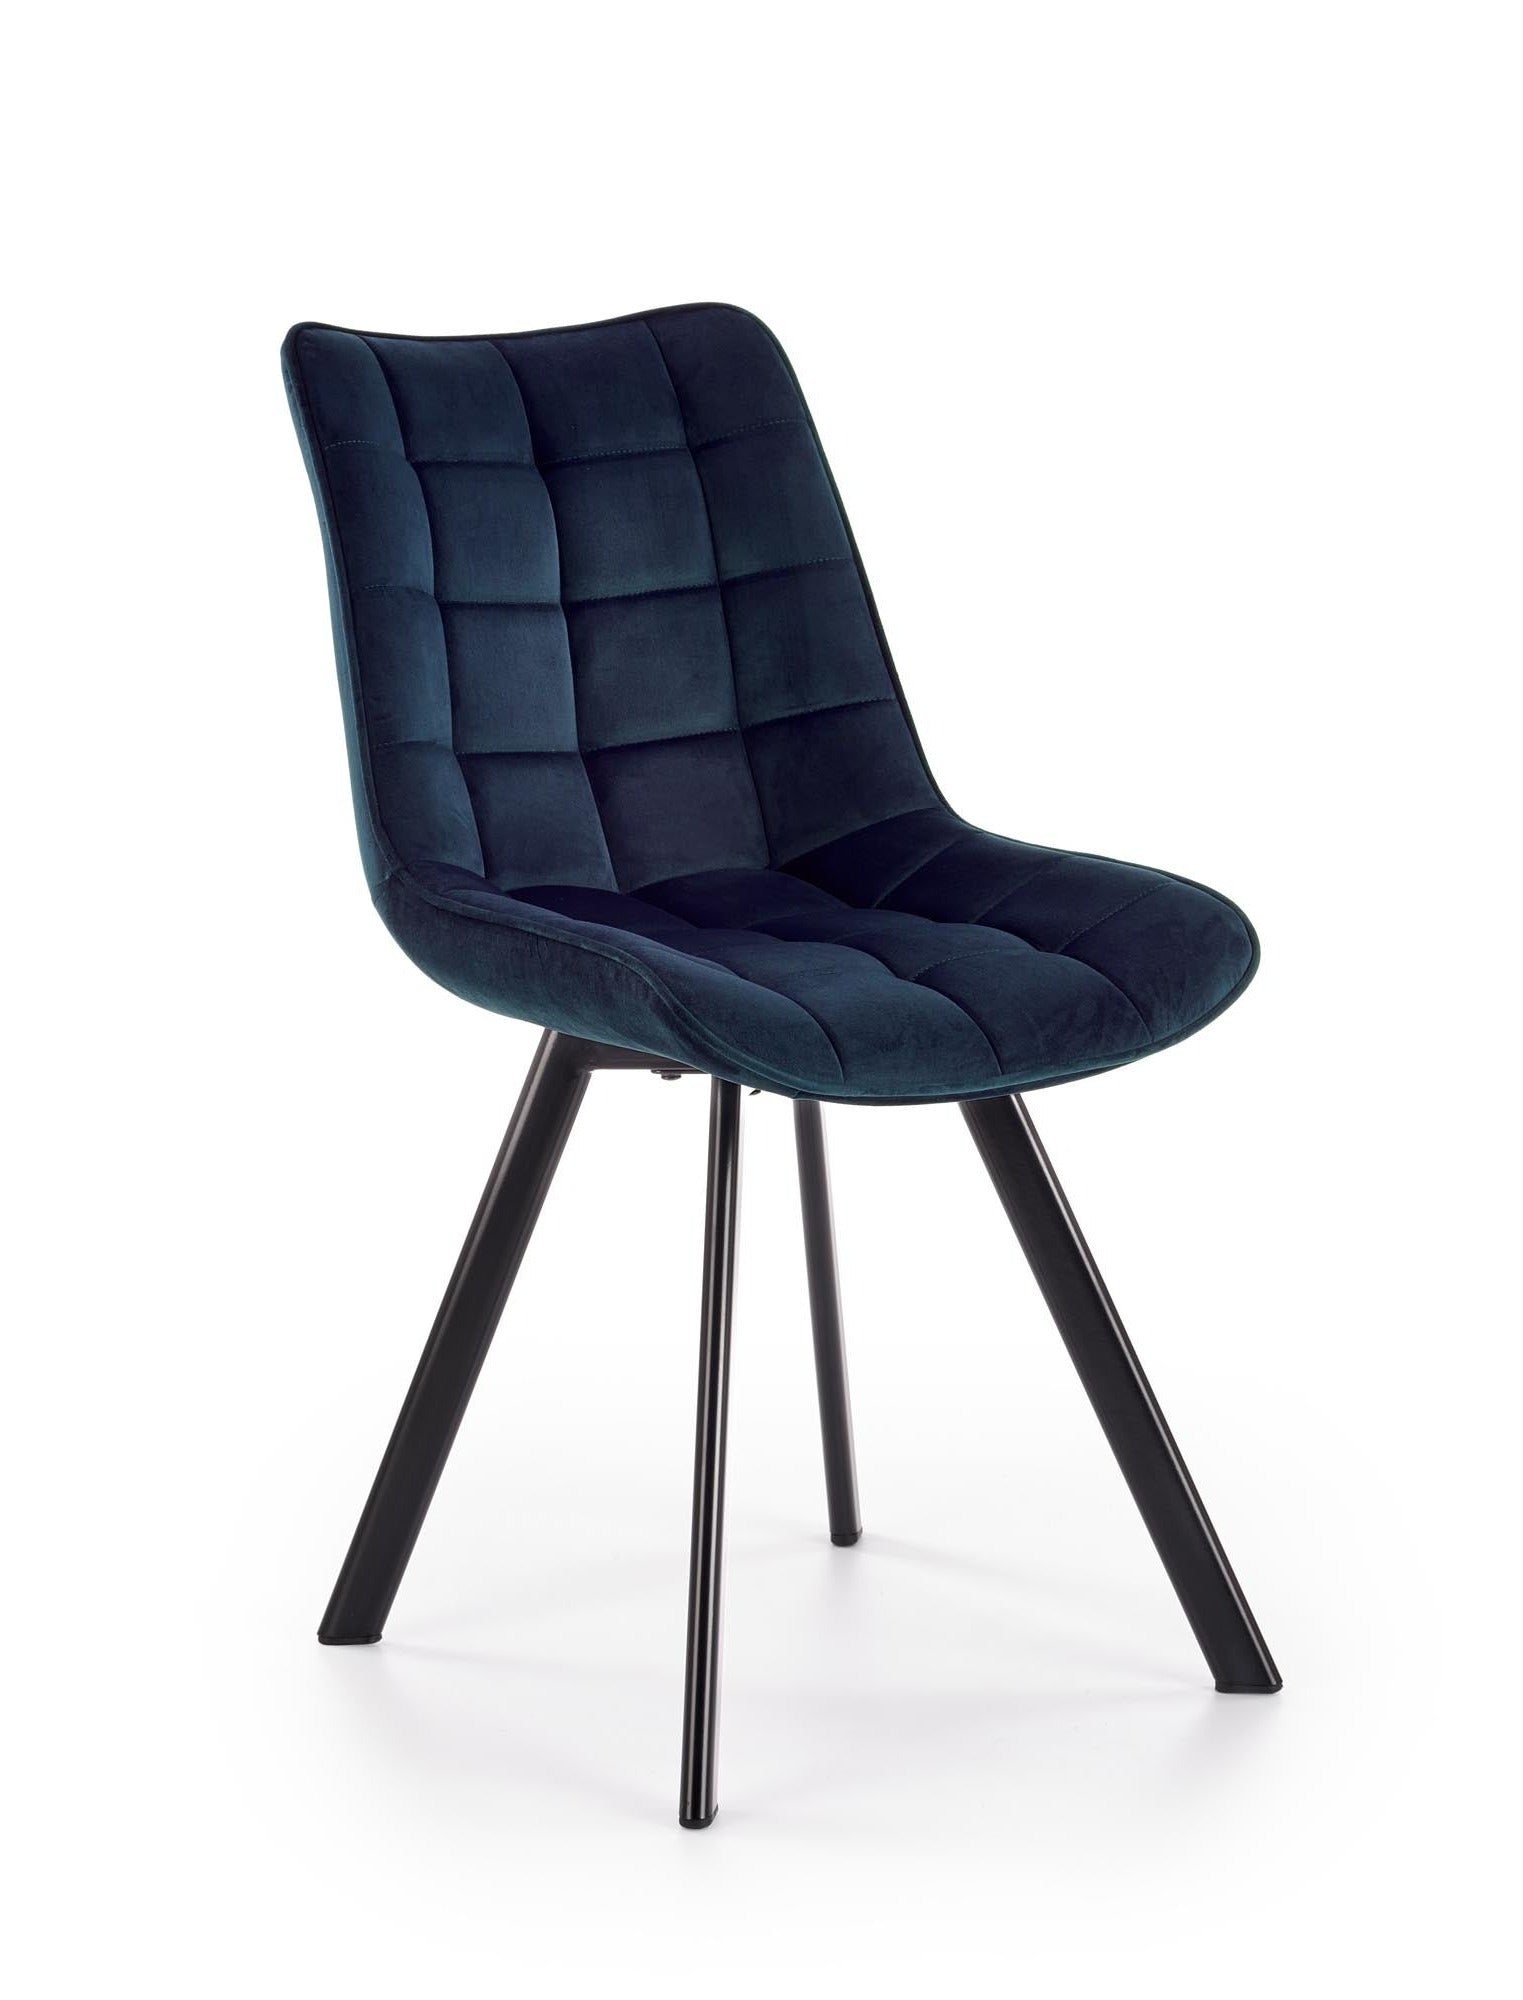 Kay szék (sötétkék) - Marco Mobili Bútoráruház - Szék